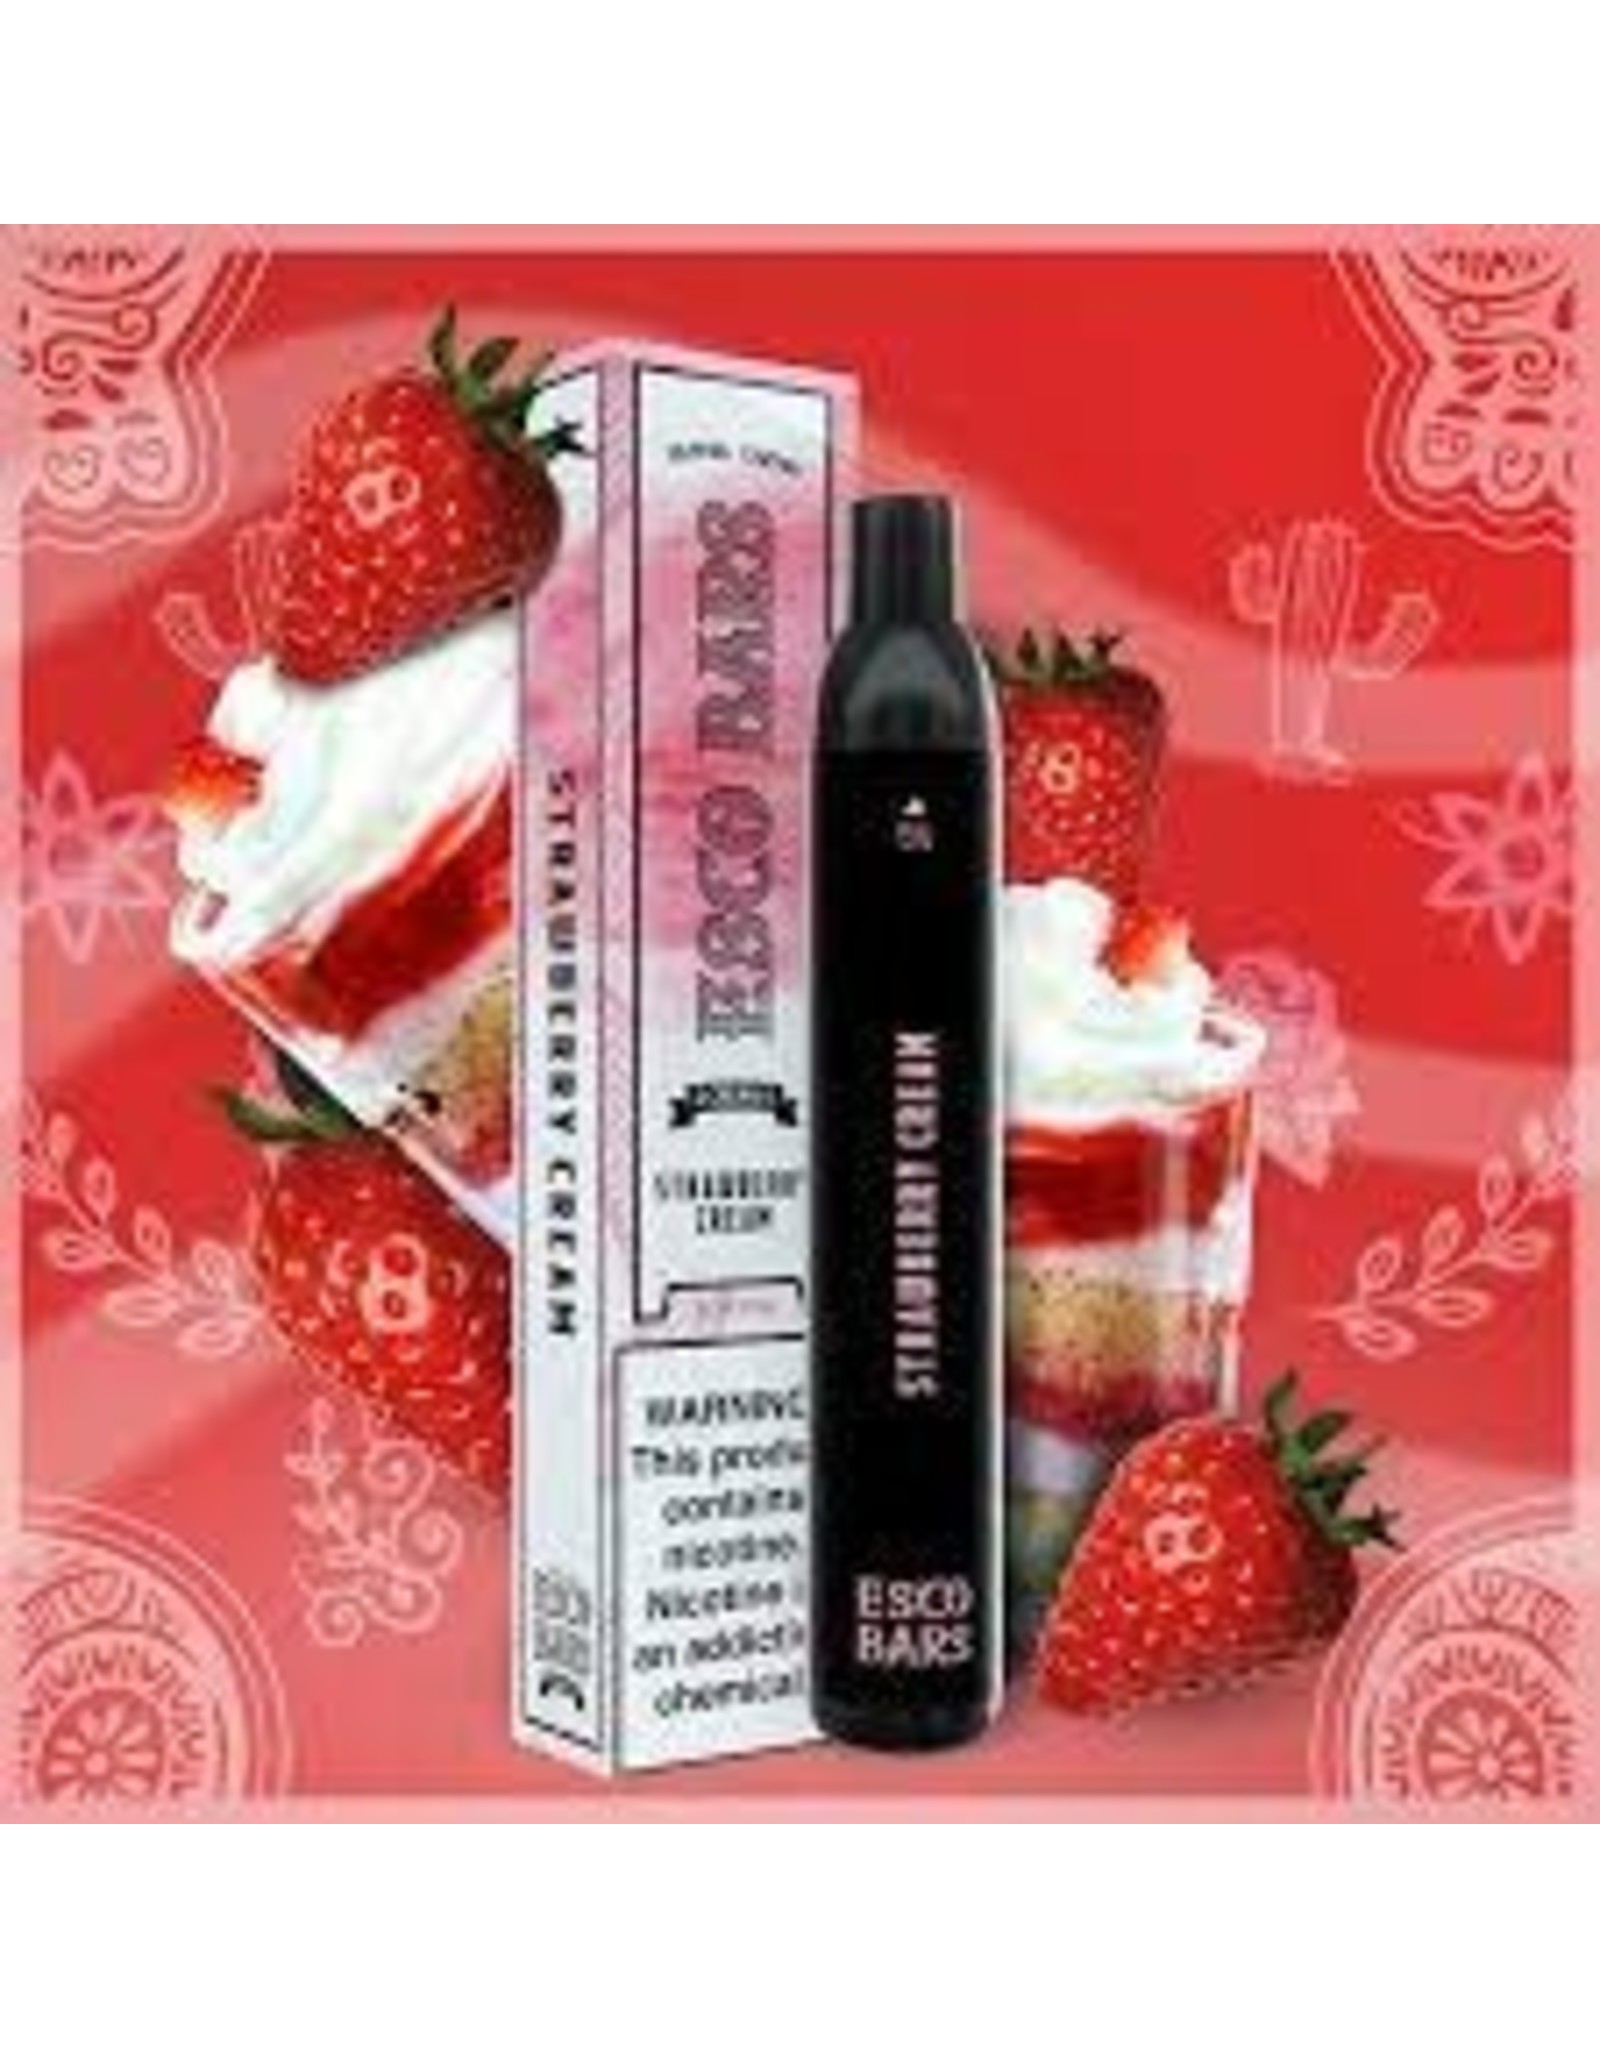 ESCO bars ESCO Bar 2500 Strawberry Cream 5% box